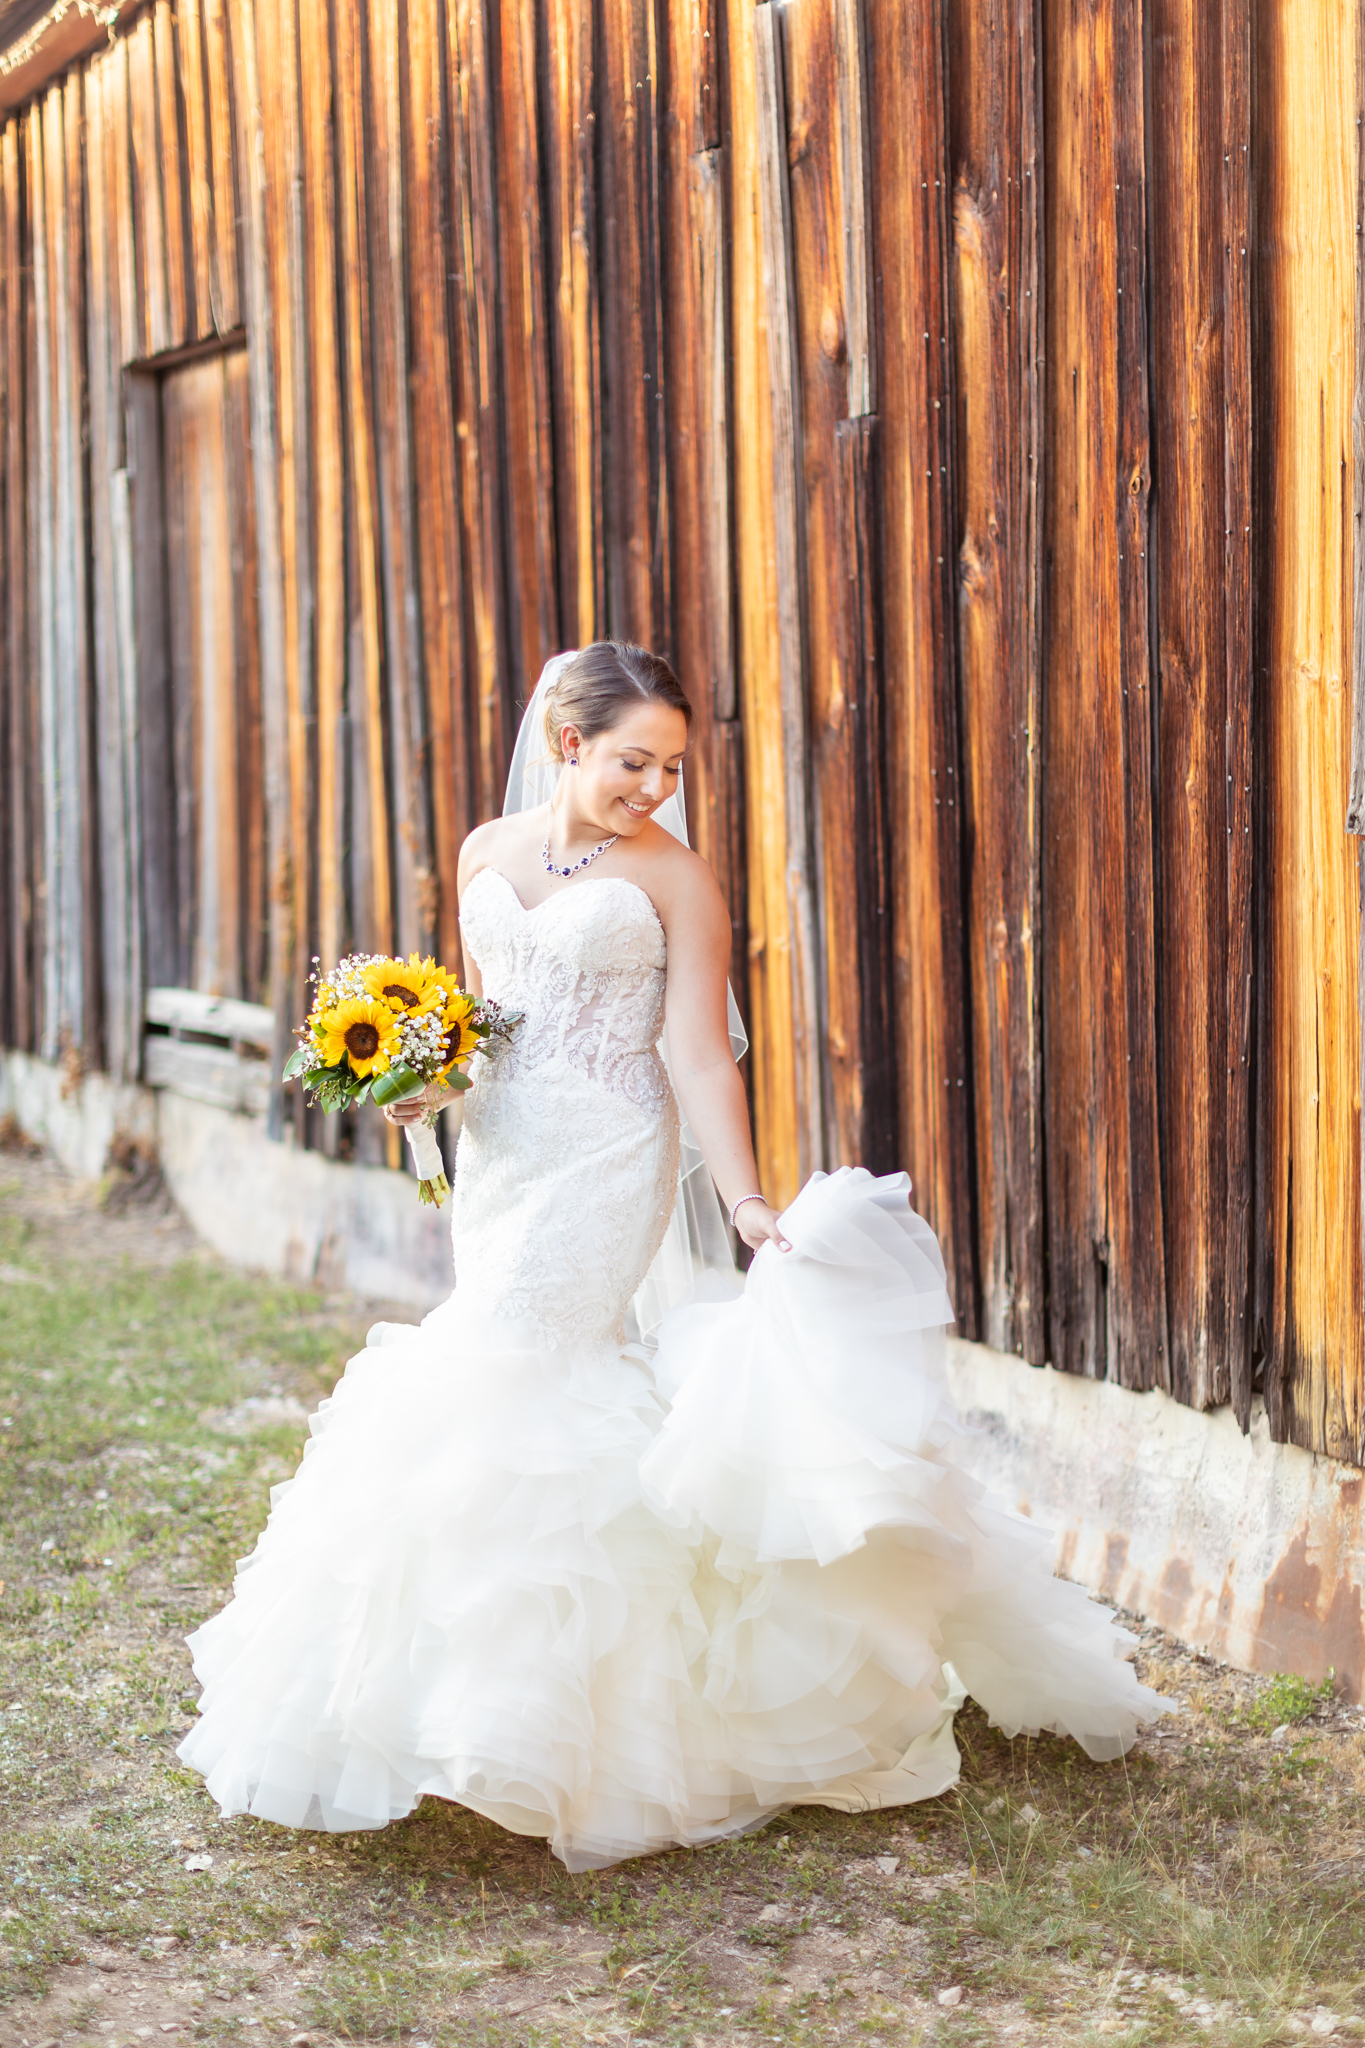 A Bridal Session in Gruene in New Braunfels, TX by Dawn Elizabeth Studios, New Braunfels Wedding Photographer